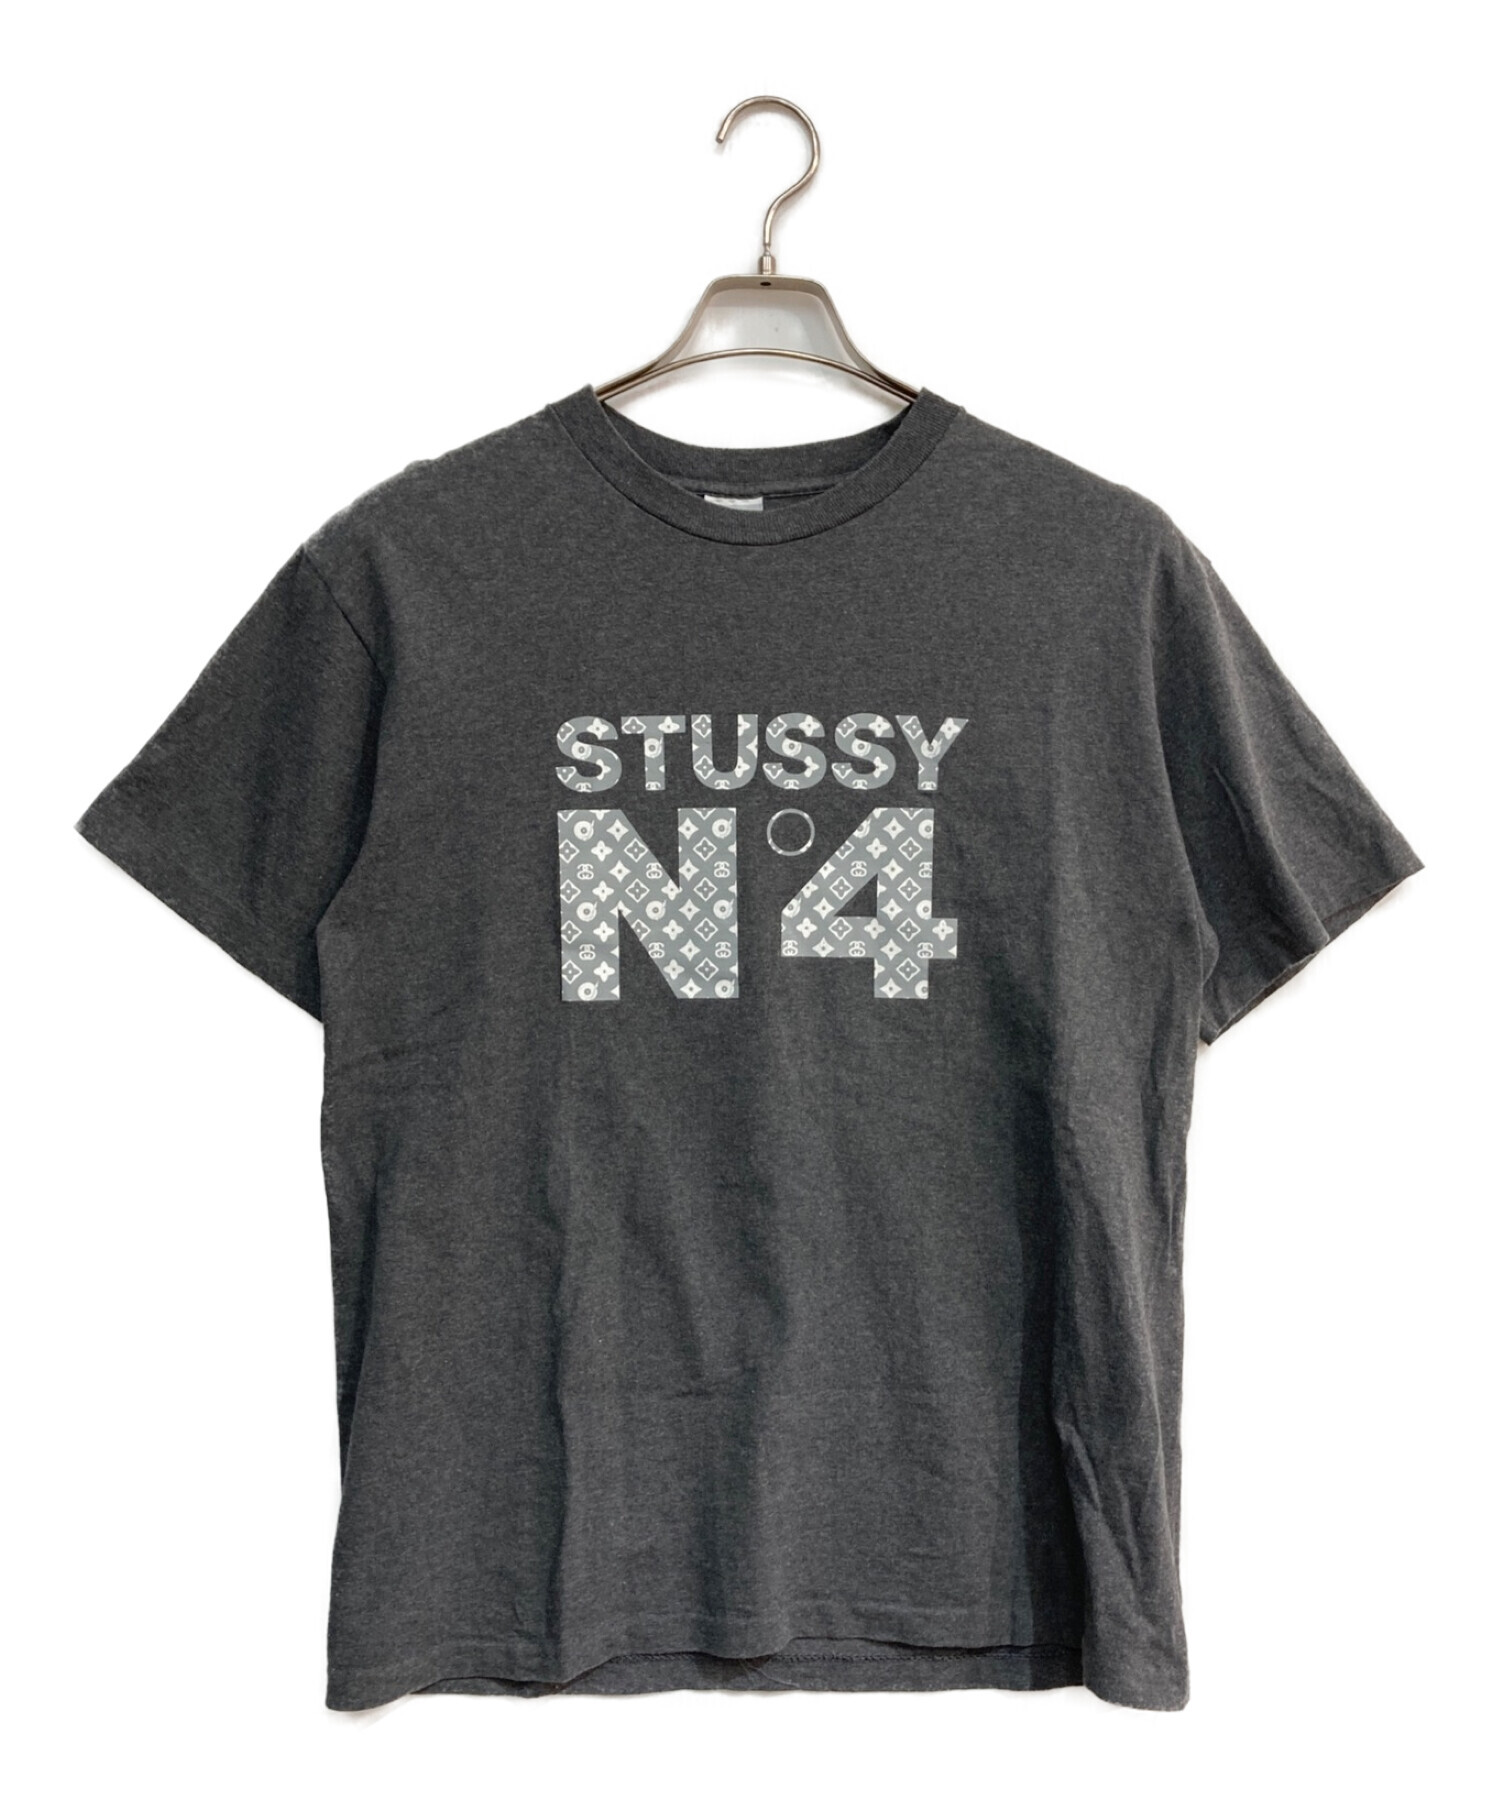 Stussy ステューシー Tシャツ USA シングルステッチ モノグラム